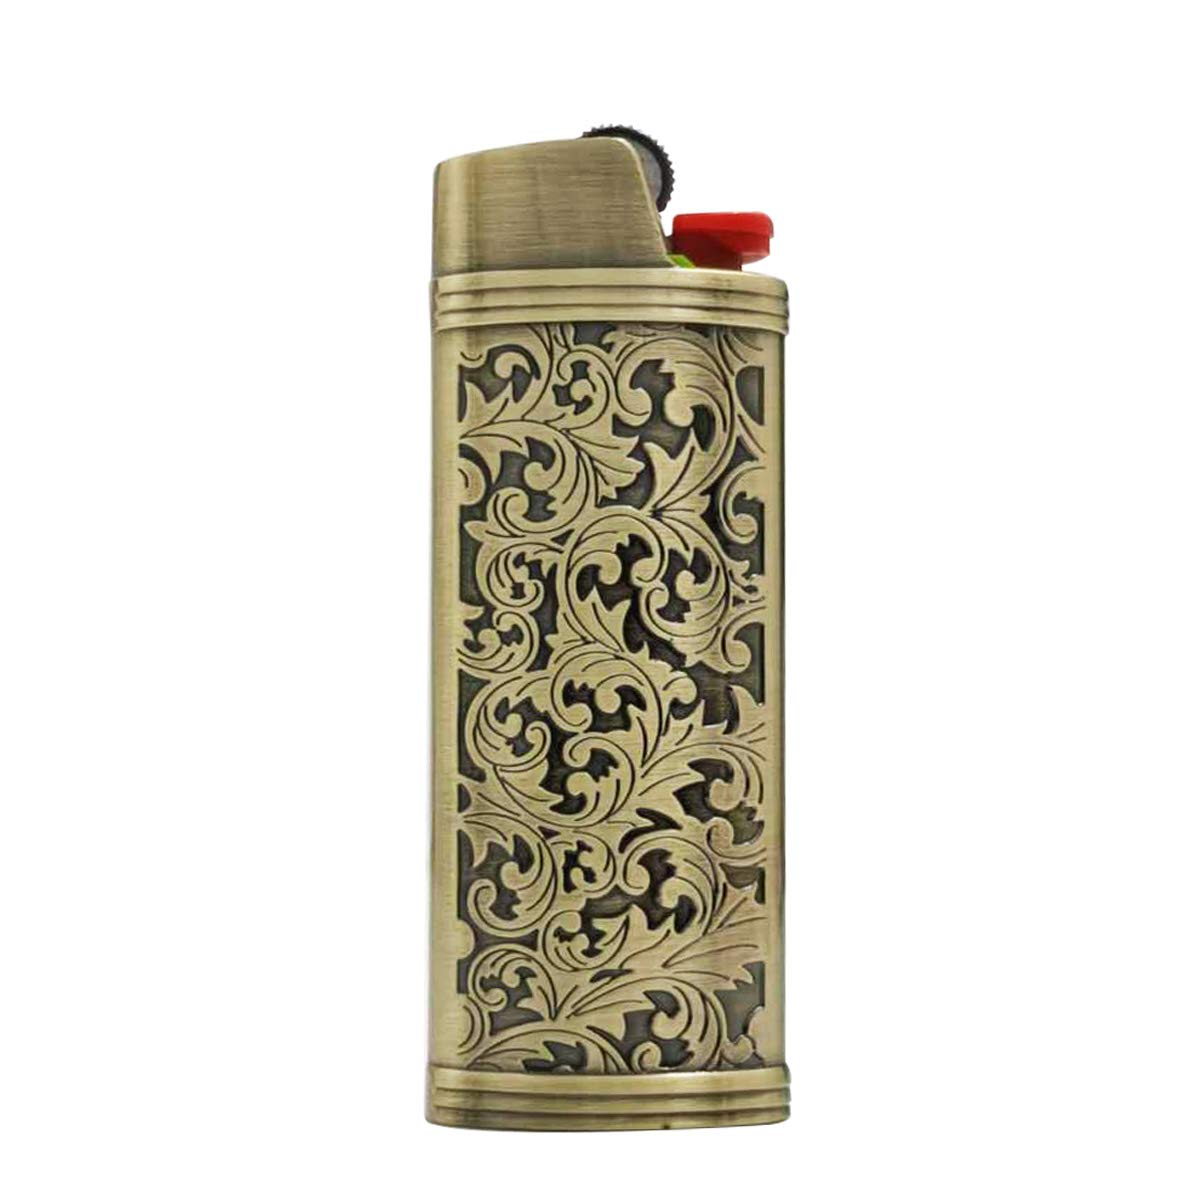 Lucklybestseller Vintage Metal Lighter Case Cover Holder for BIC